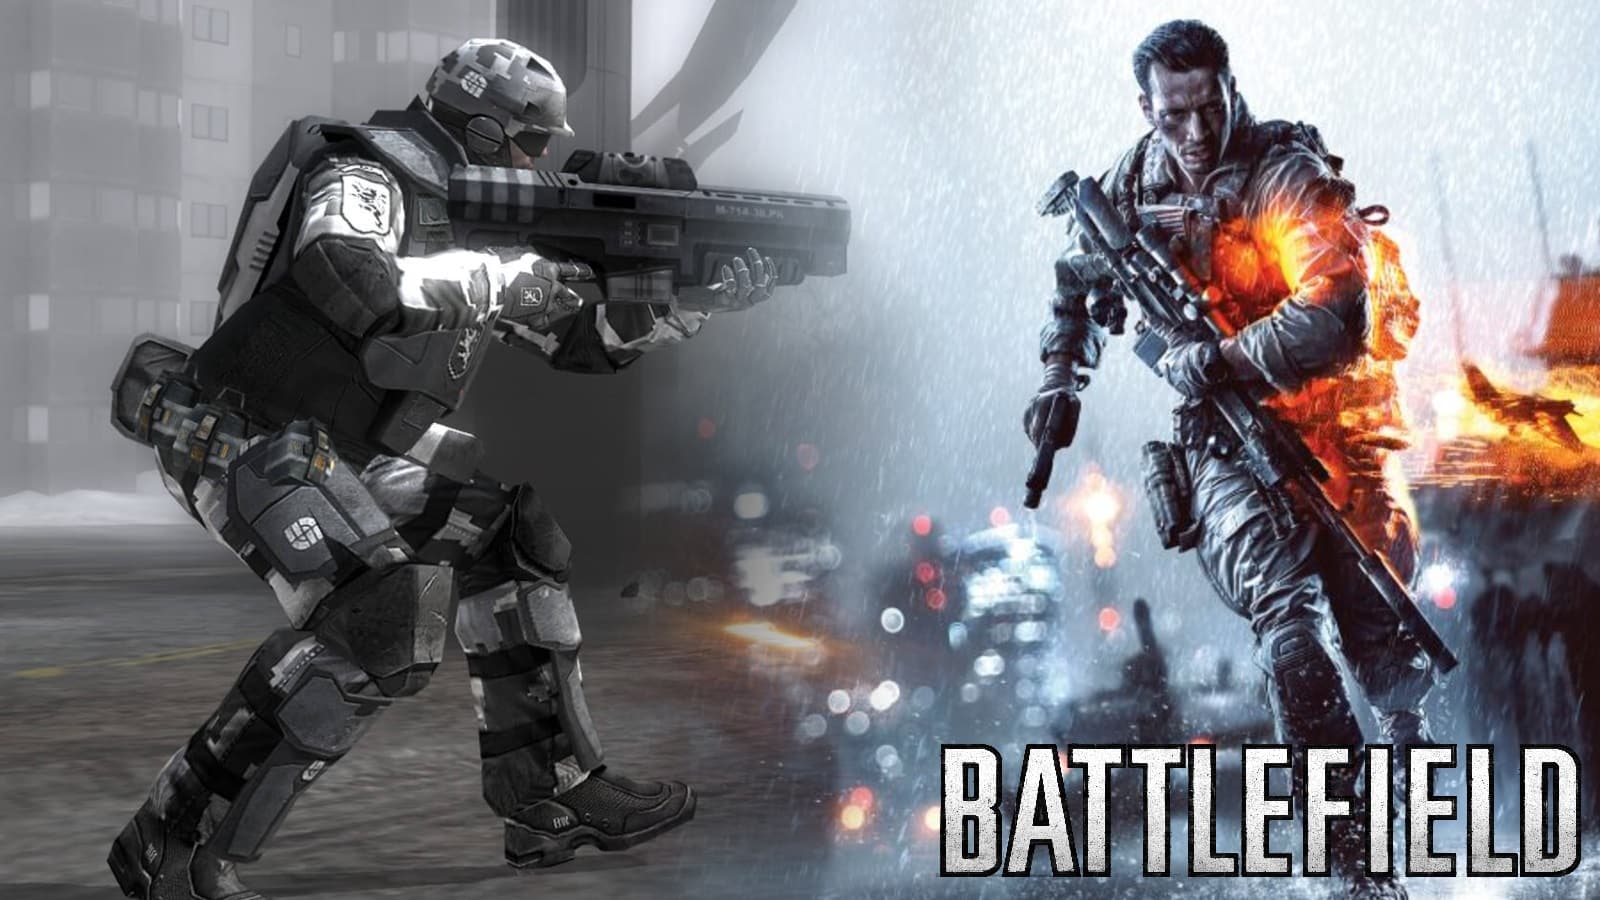 Rumor: Battlefield 6 cover art leak reveals 'Battlefield 2042' title